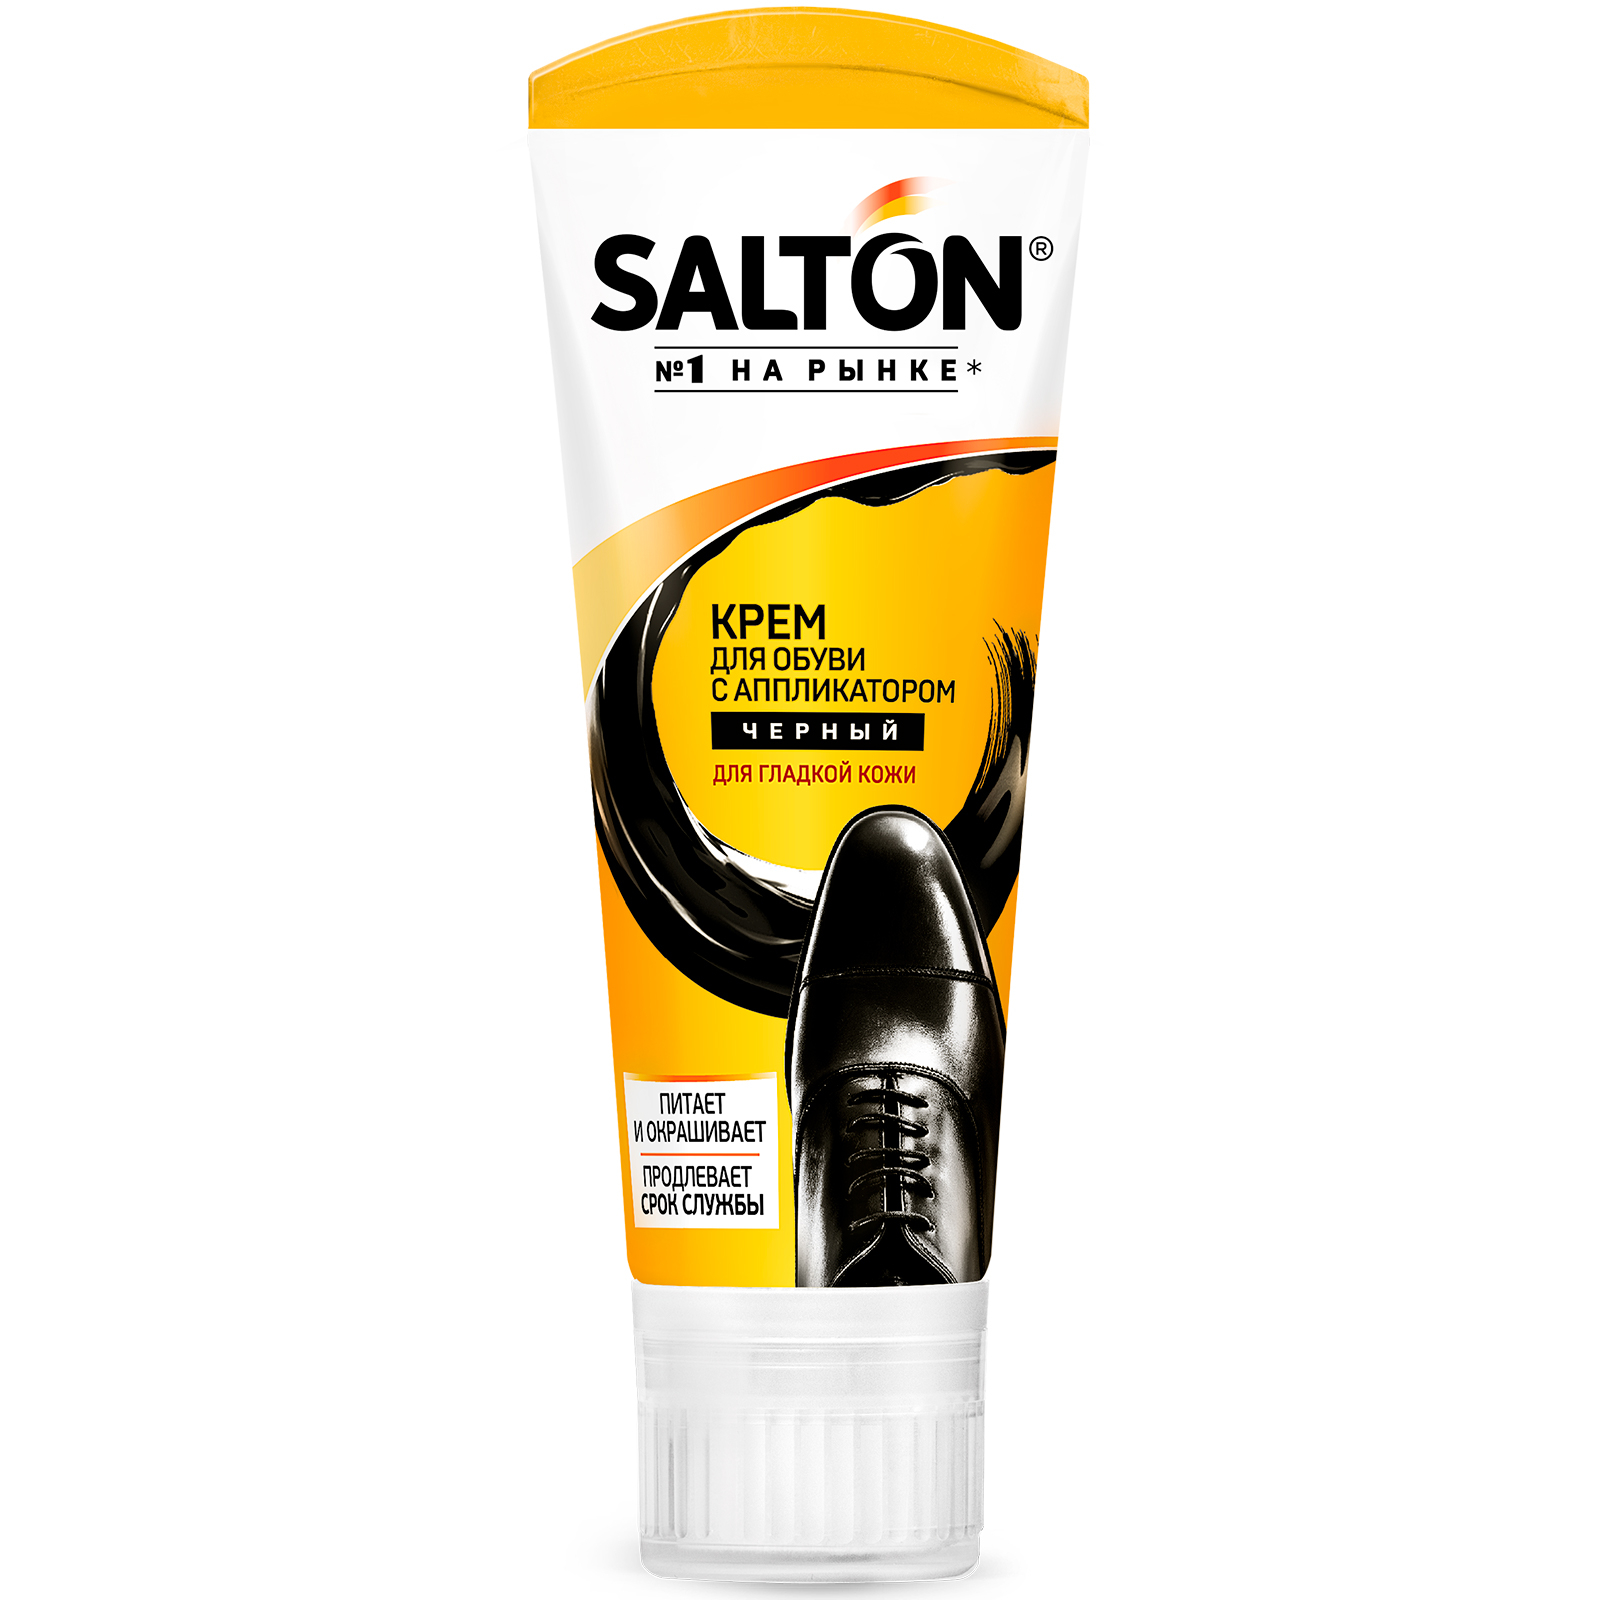 Крем для обуви Salton в тубе с аппликатором, черный, 75 мл крем для обуви salton 75мл для гладкой кожи черный туба